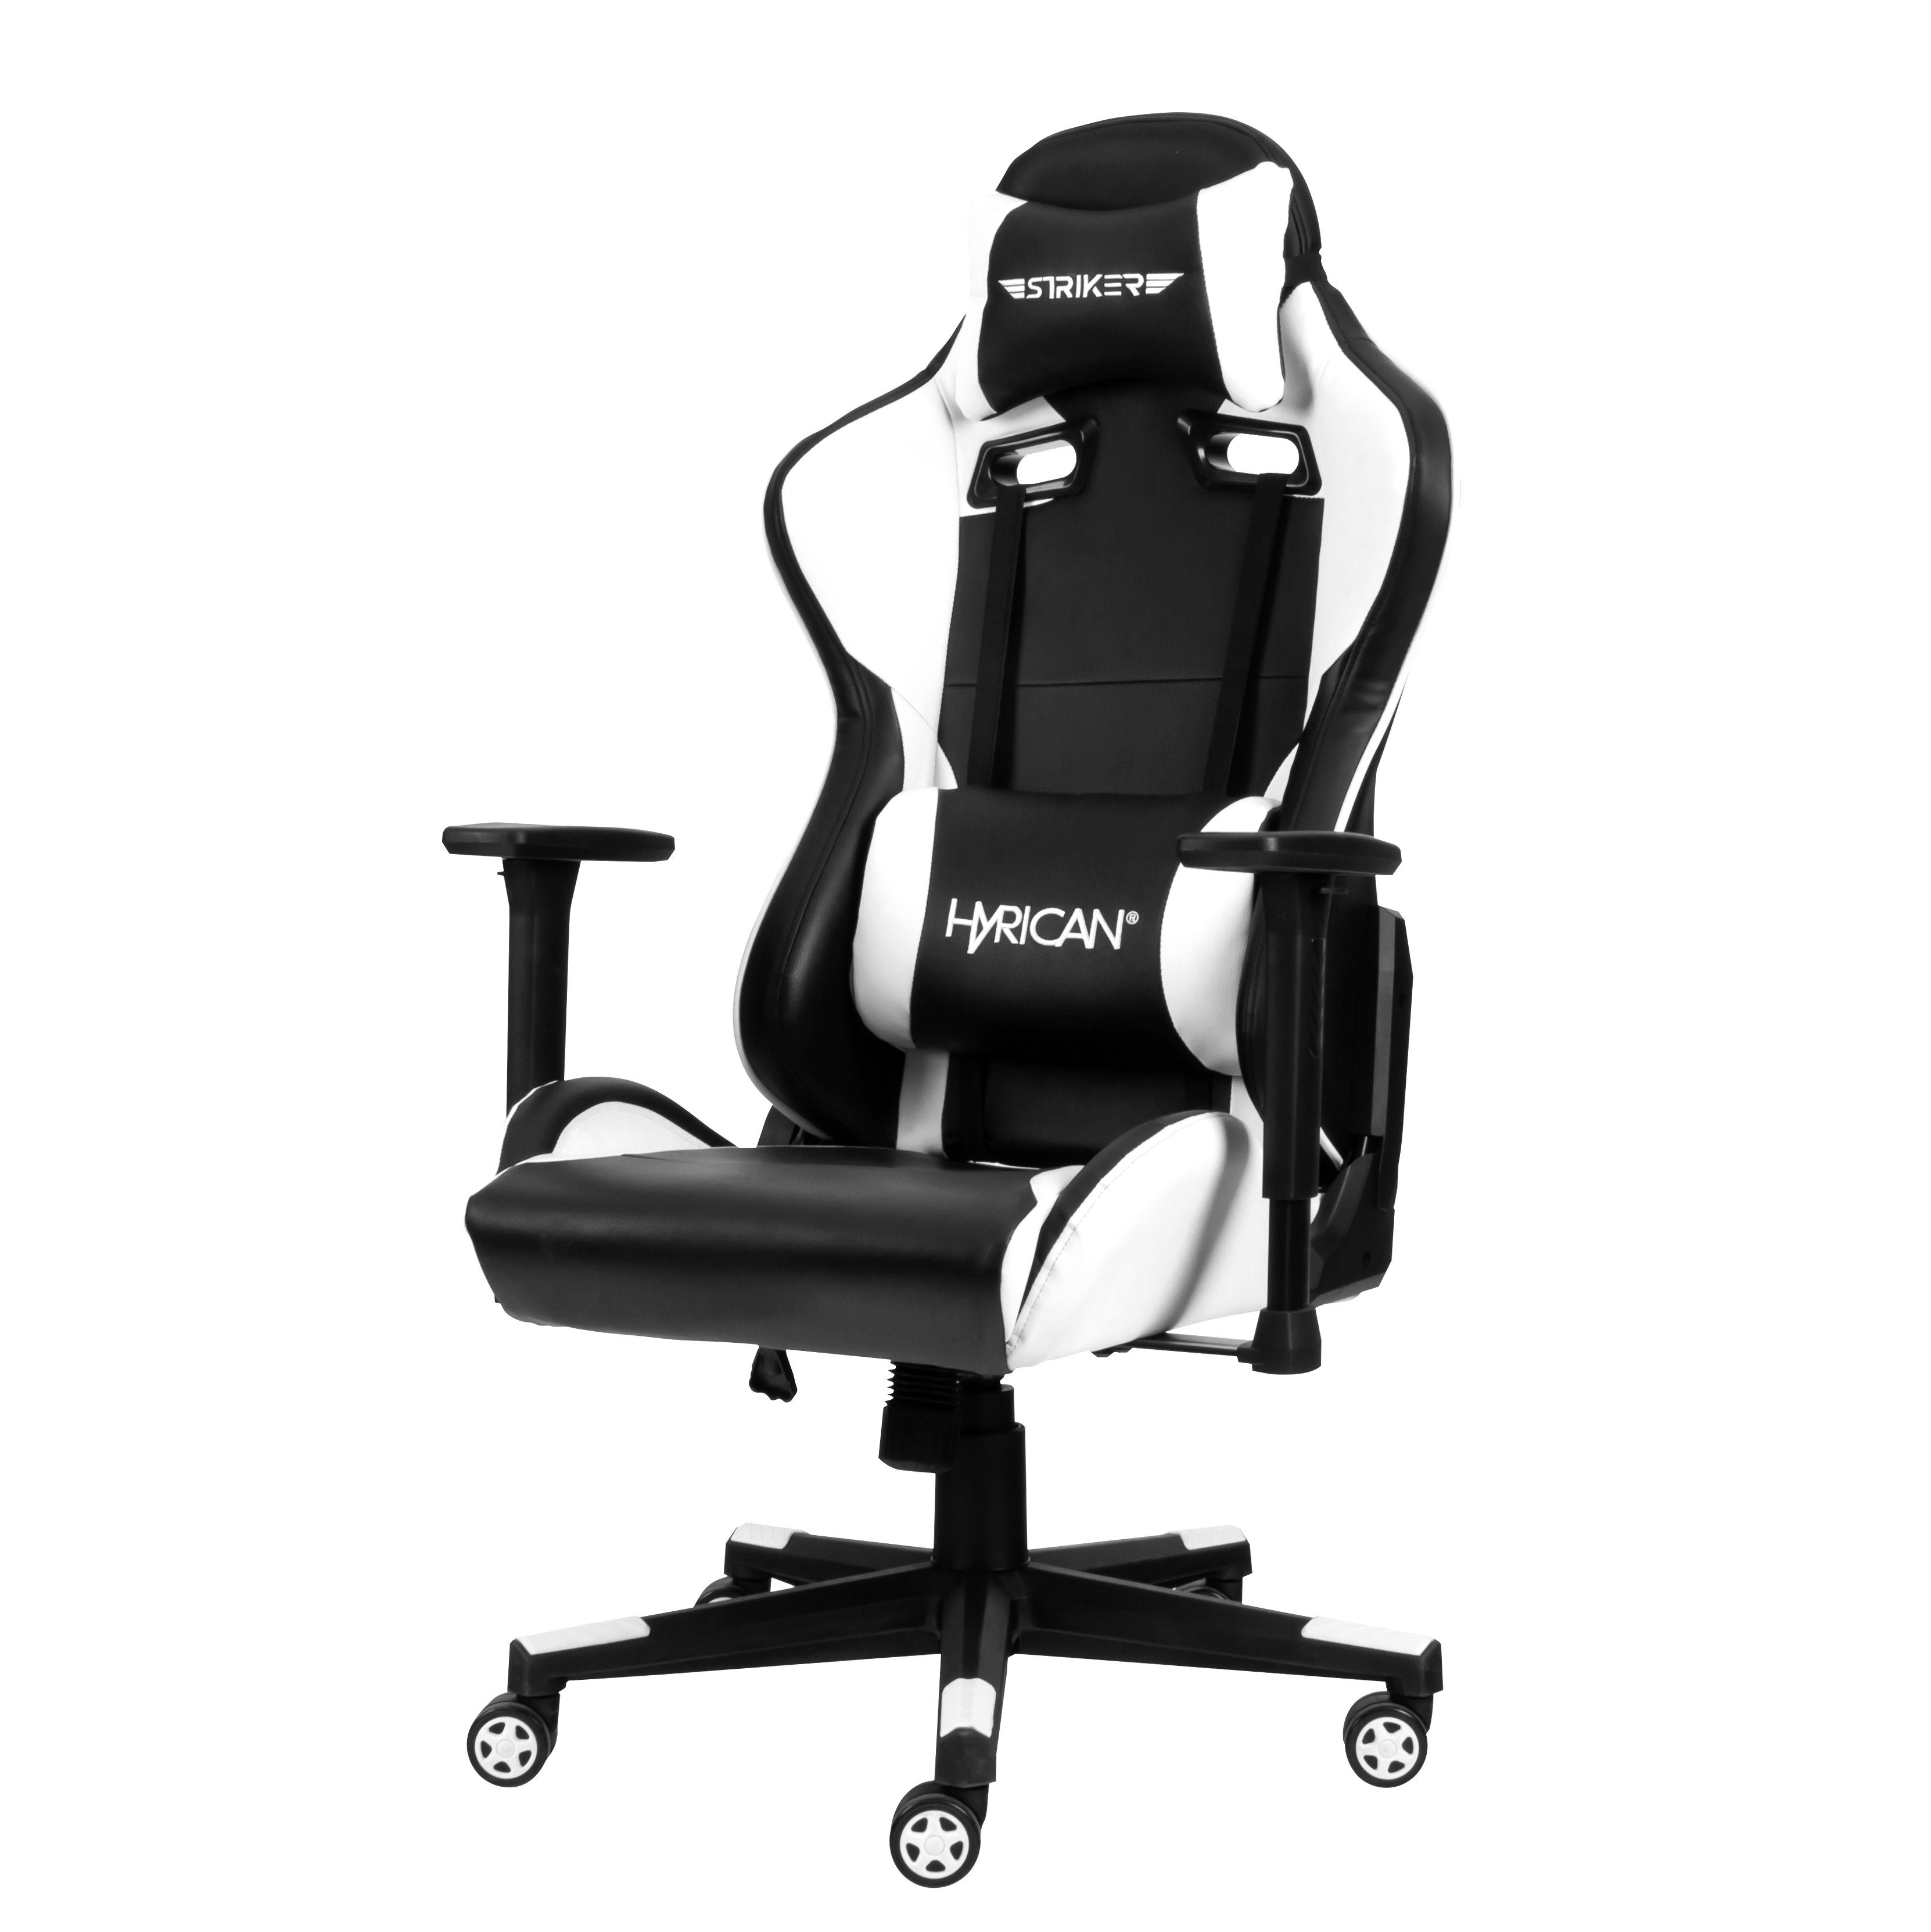 Gamingstuhl, Schreibtischstuhl, schwarz/weiß, für Erwachsene Bürostuhl, Tank" Hyrican ergonomischer geeignet Kunstleder, "Striker Gaming-Stuhl